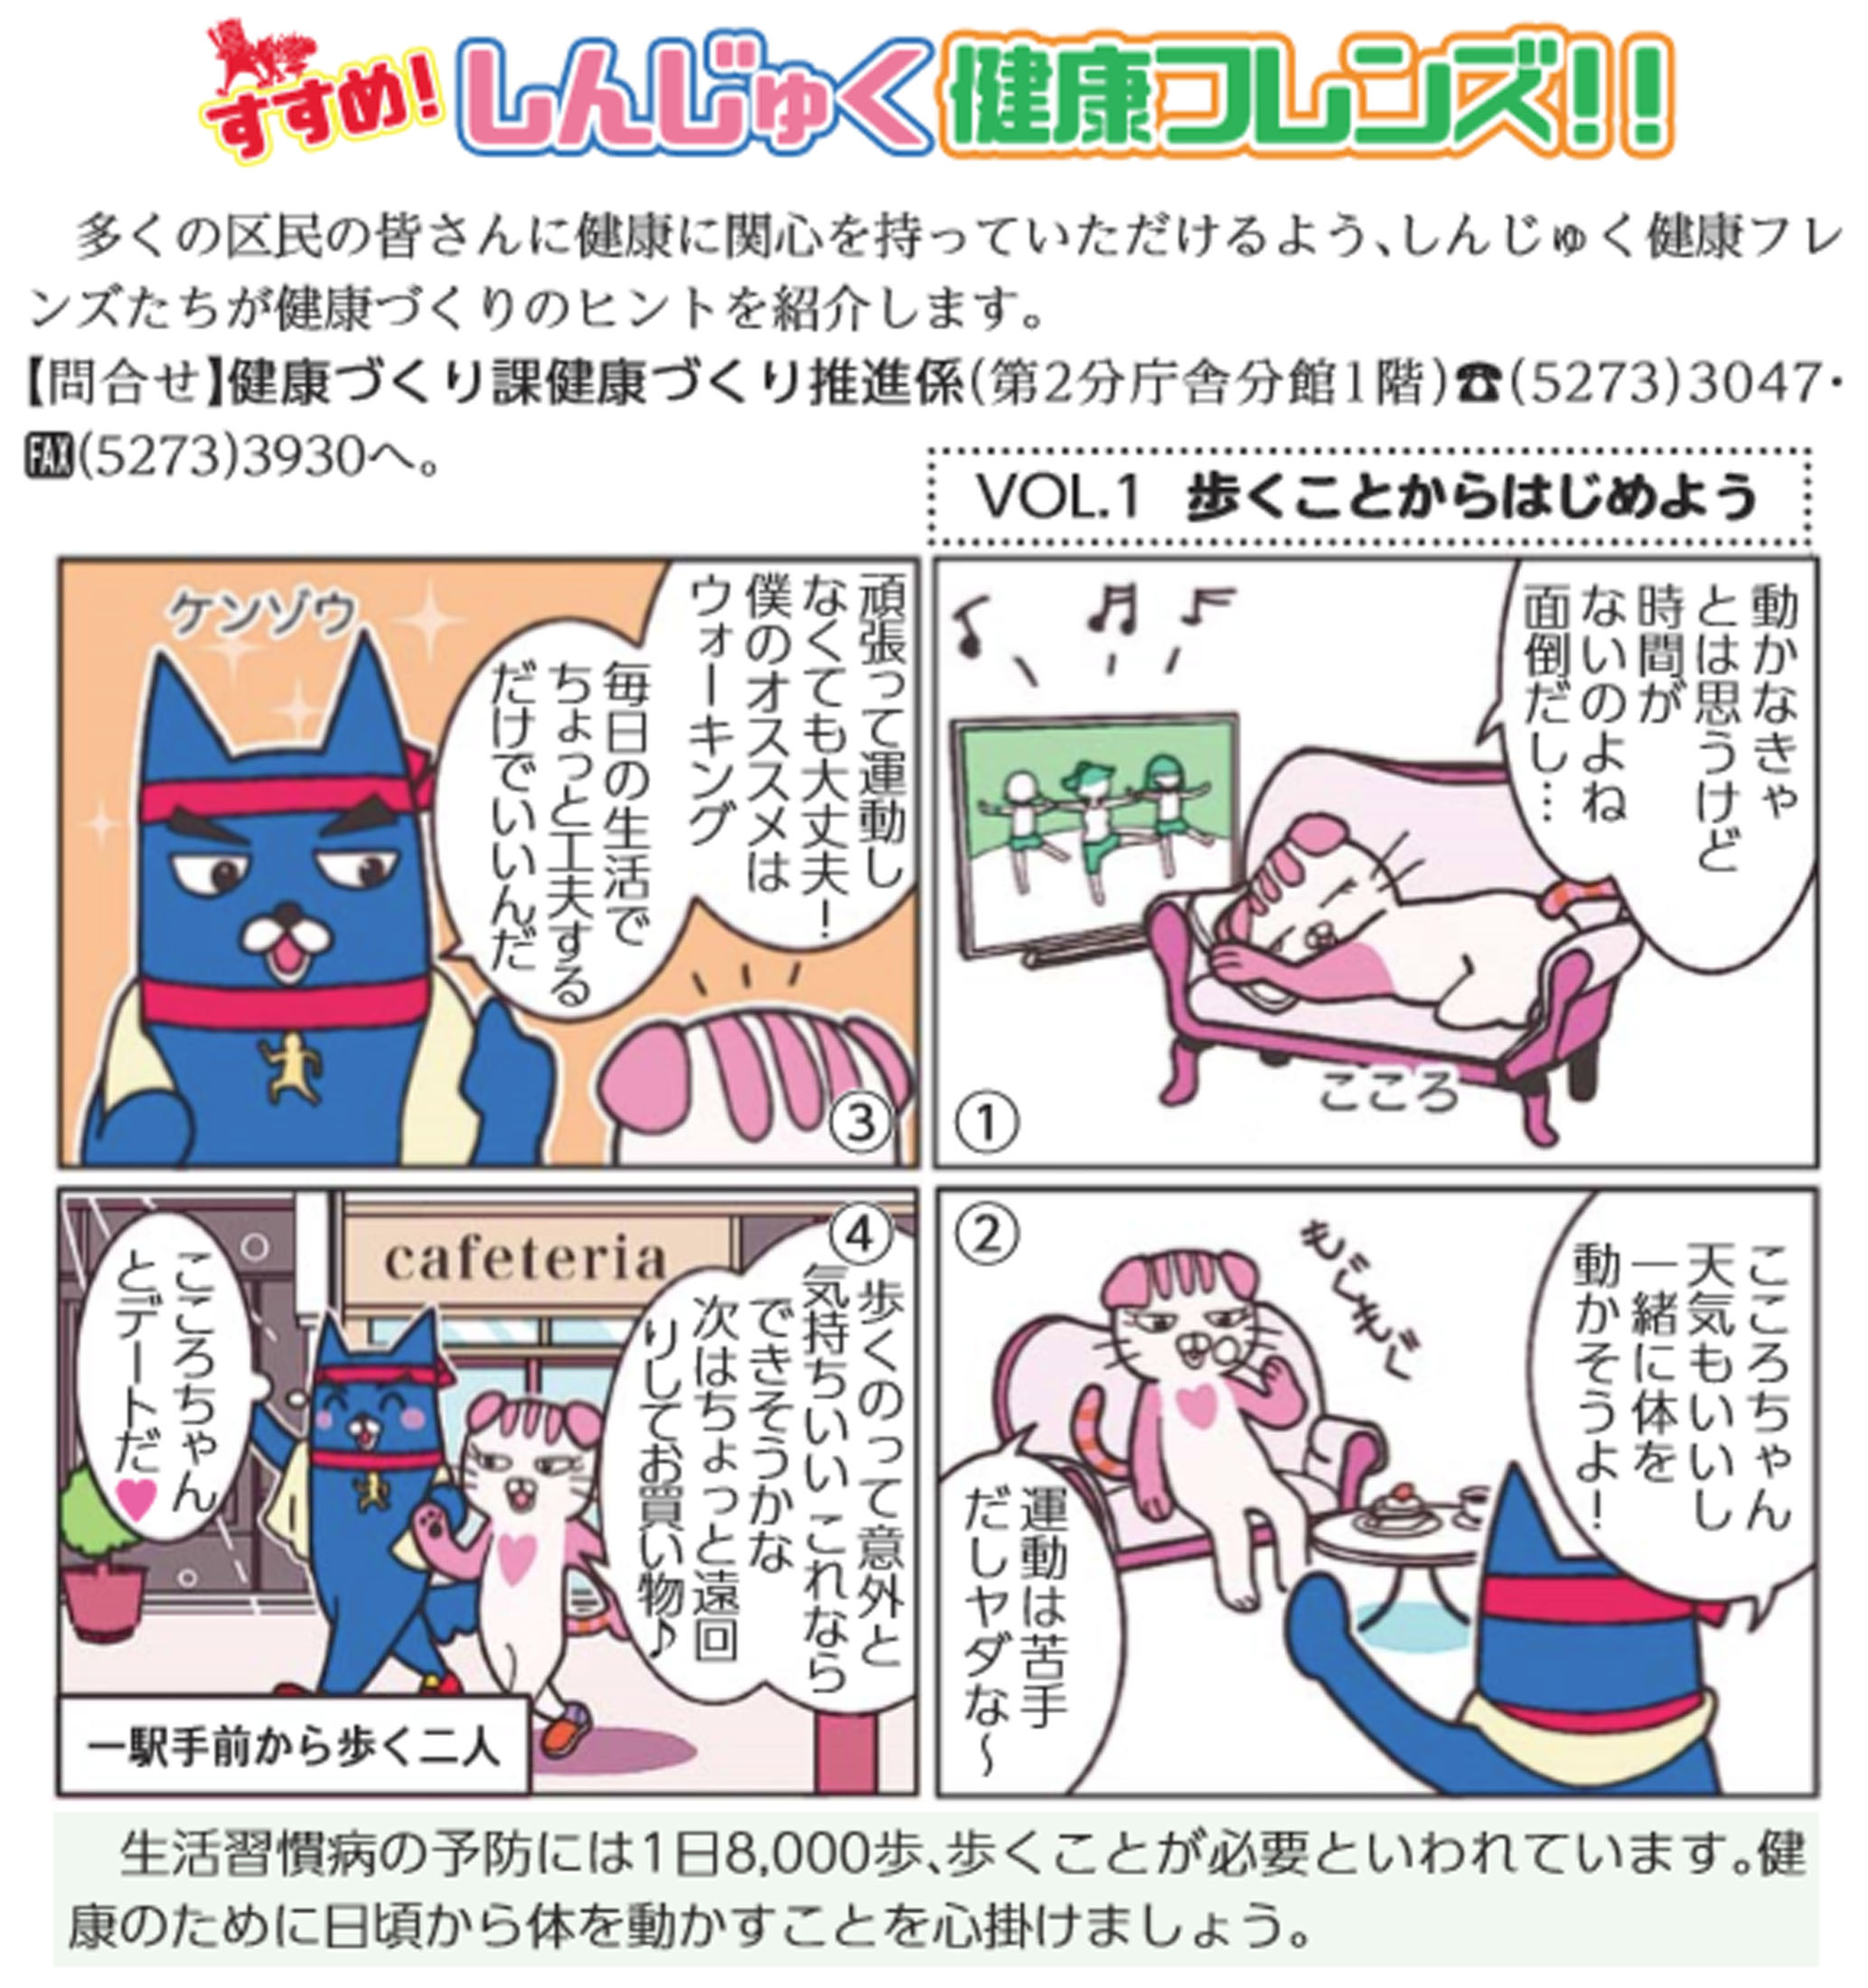 しんじゅく健康フレンズ の4コマ漫画が 新宿区の広報紙に登場 新着情報 宝塚大学 東京メディア芸術学部